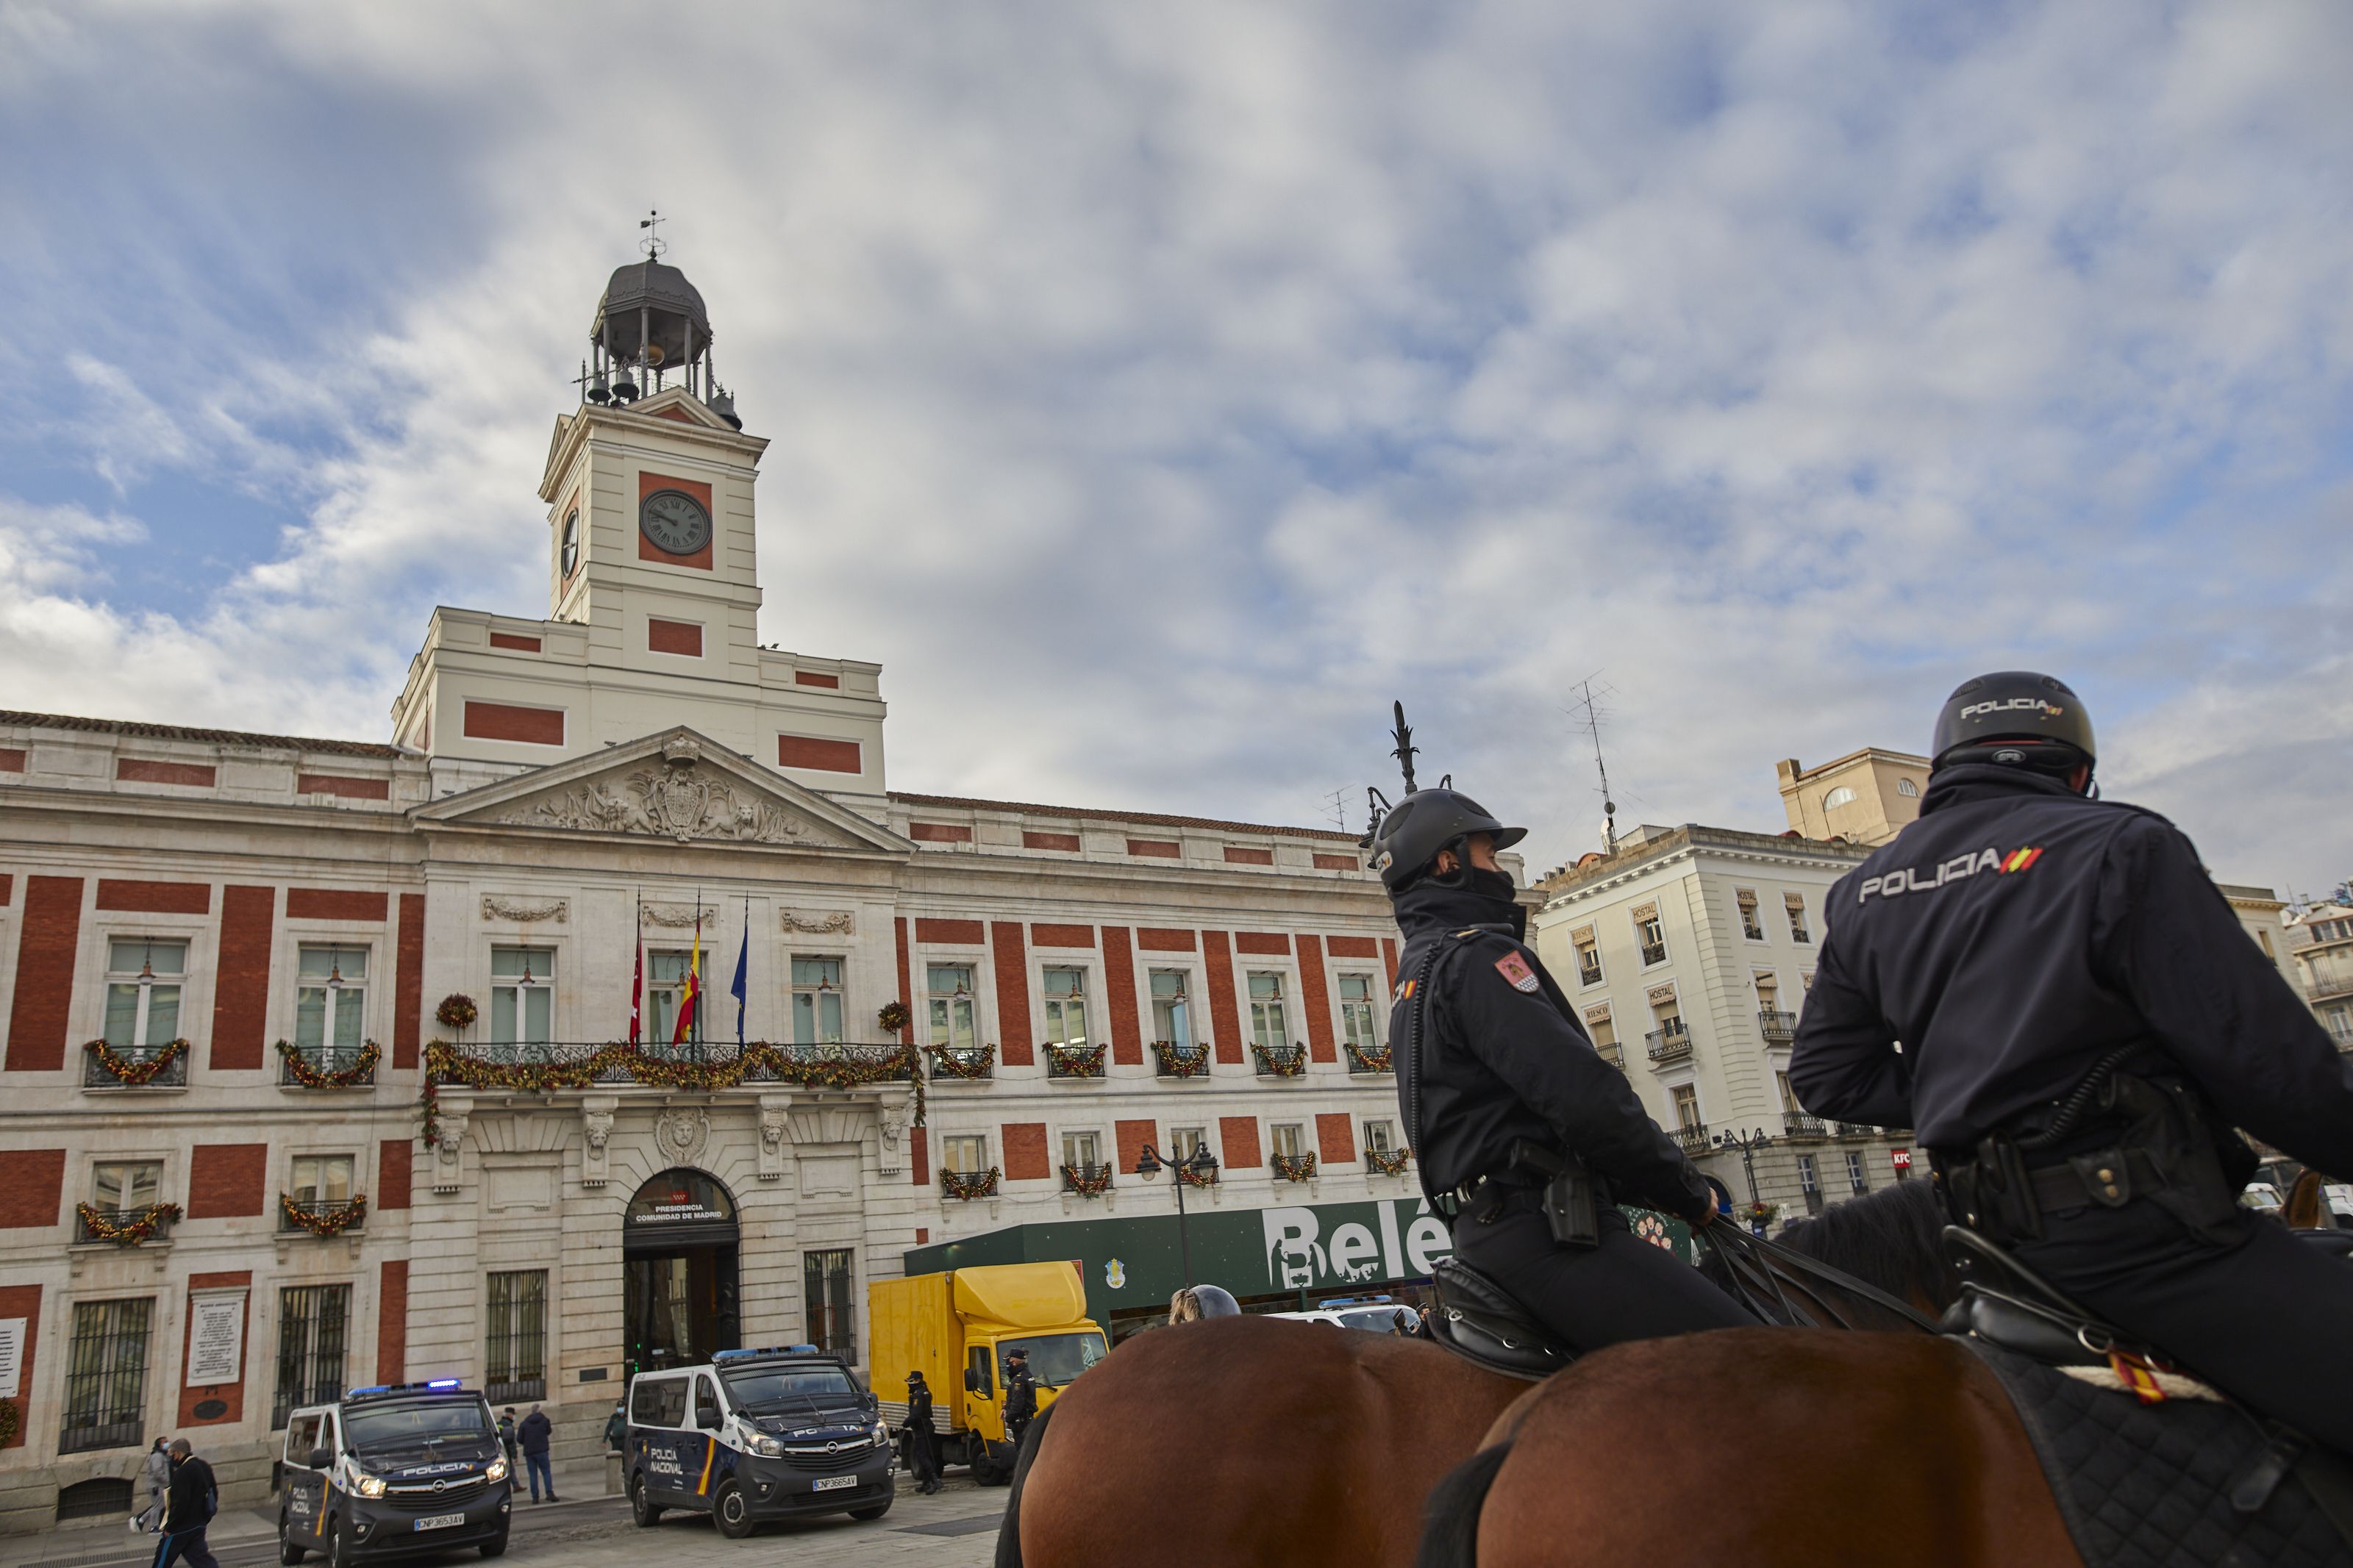 La Policía desmiente el bulo sobre un supuesto "atentado inminente" en España